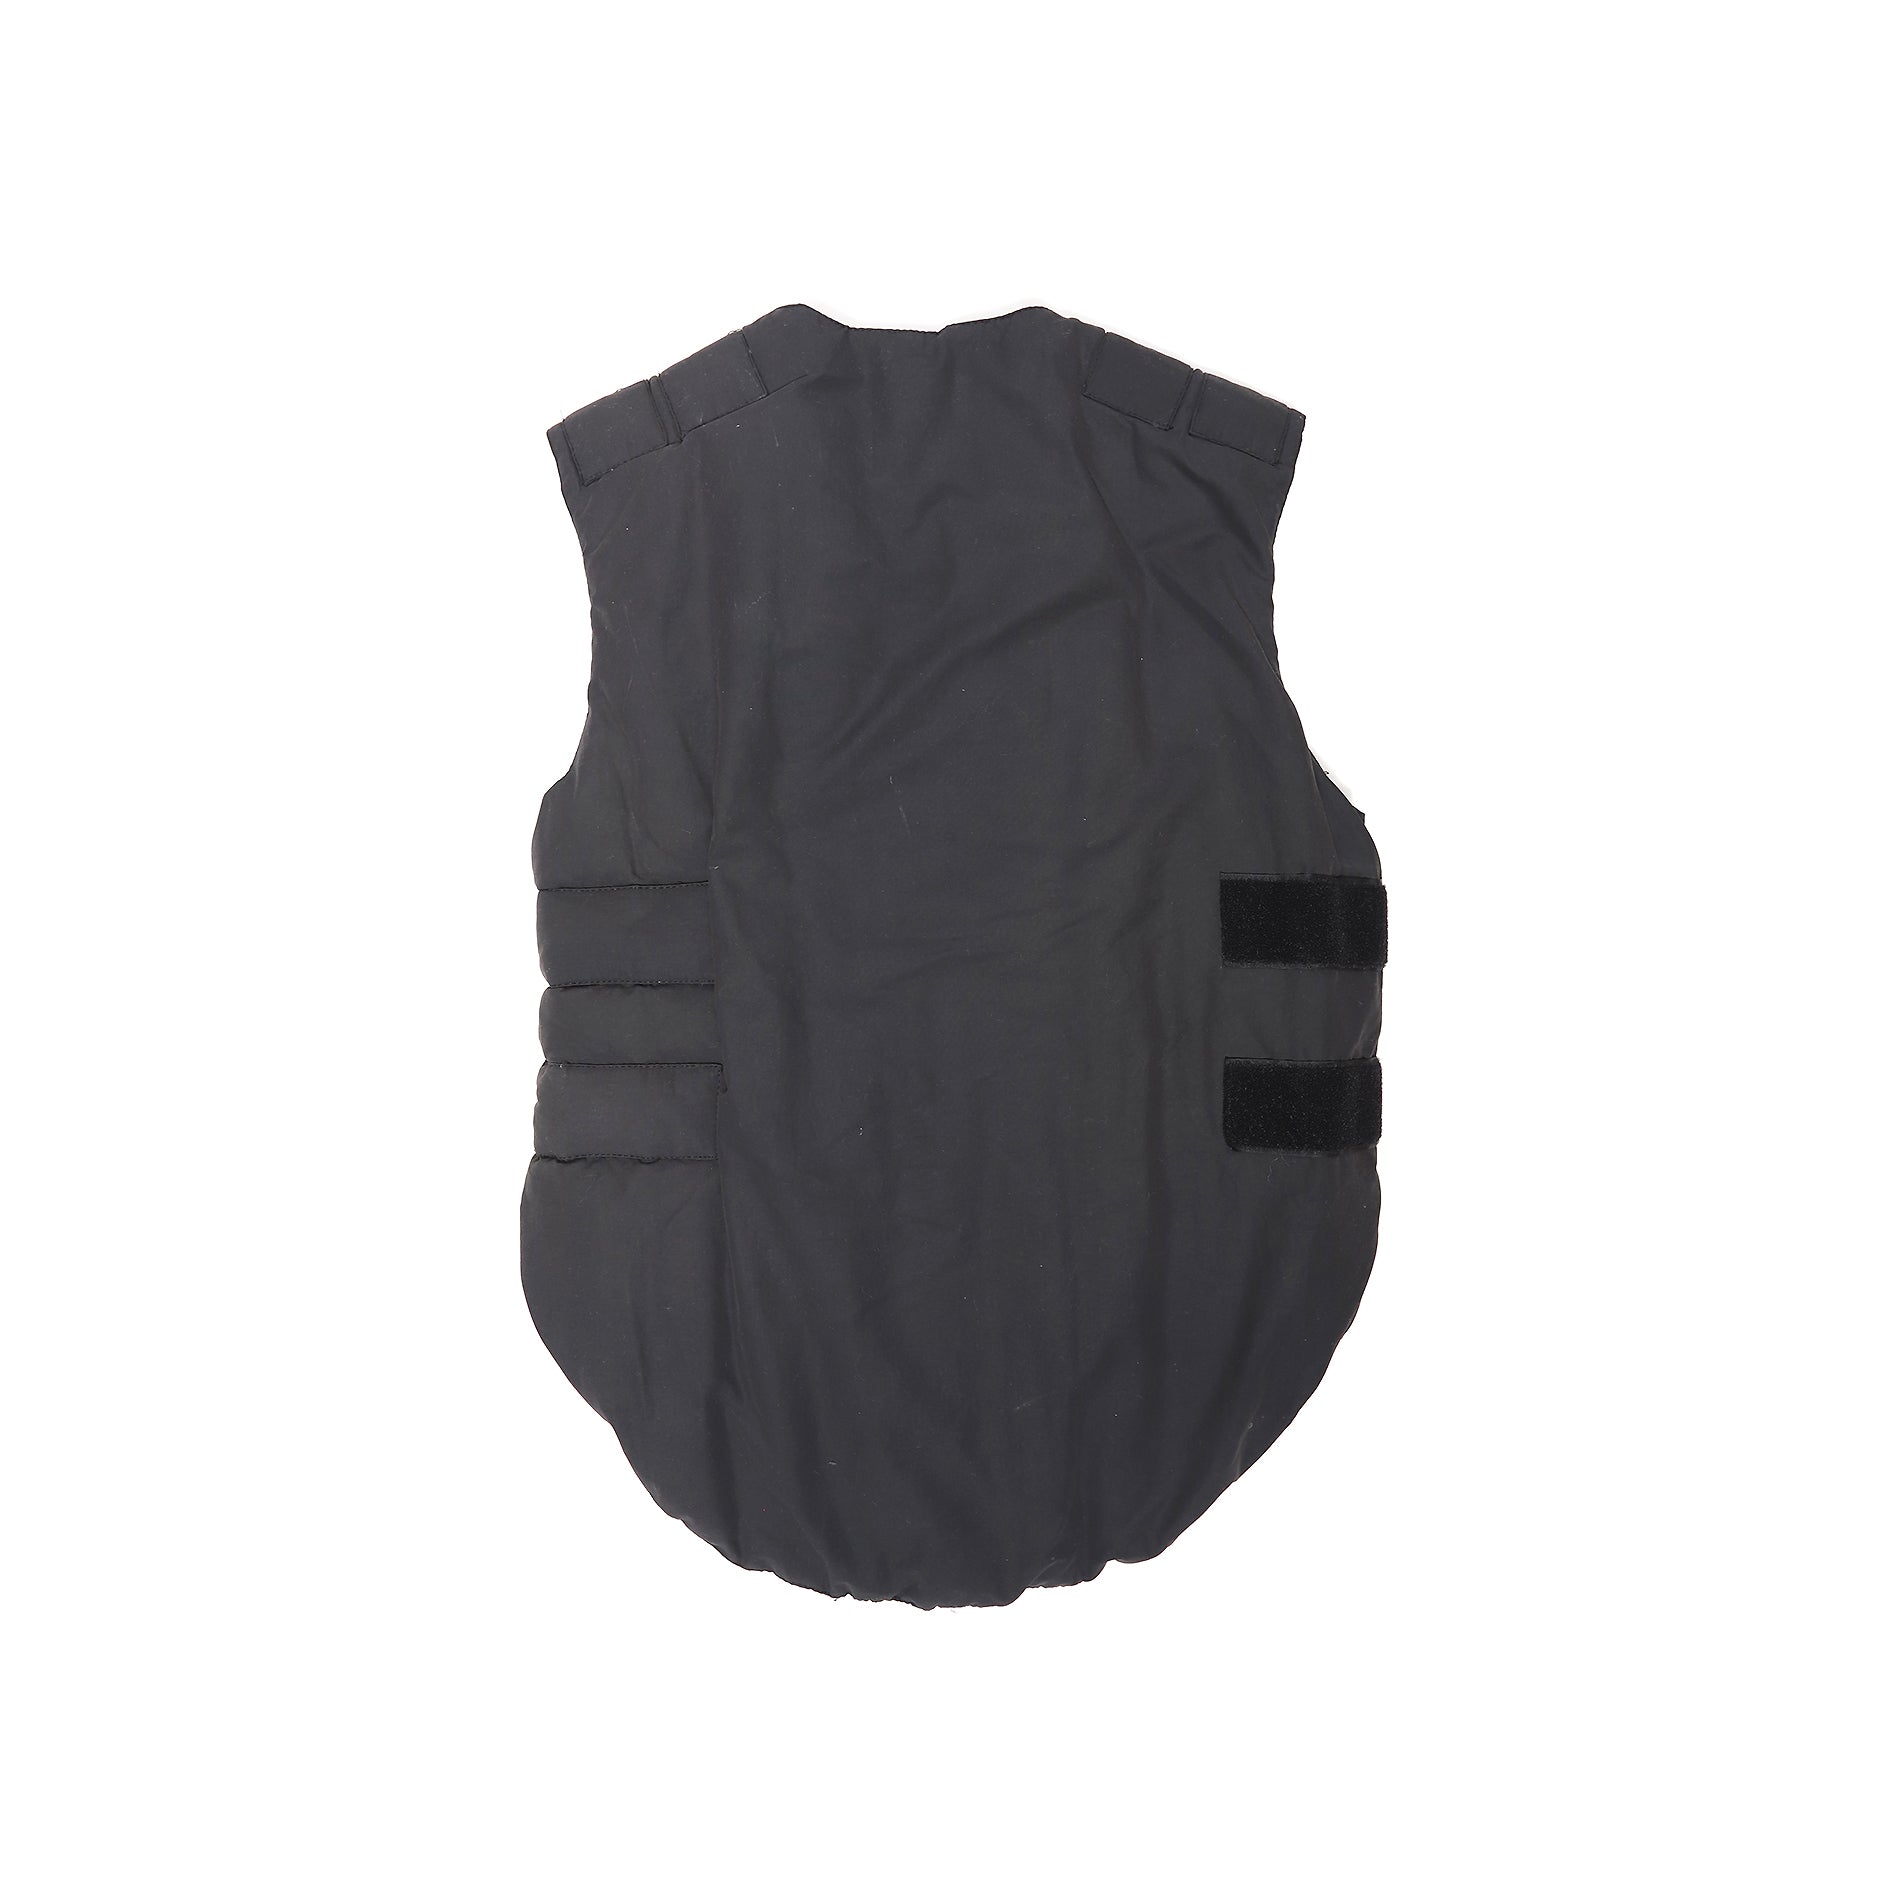 Helmut Lang AW98 Bullet Proof Vest